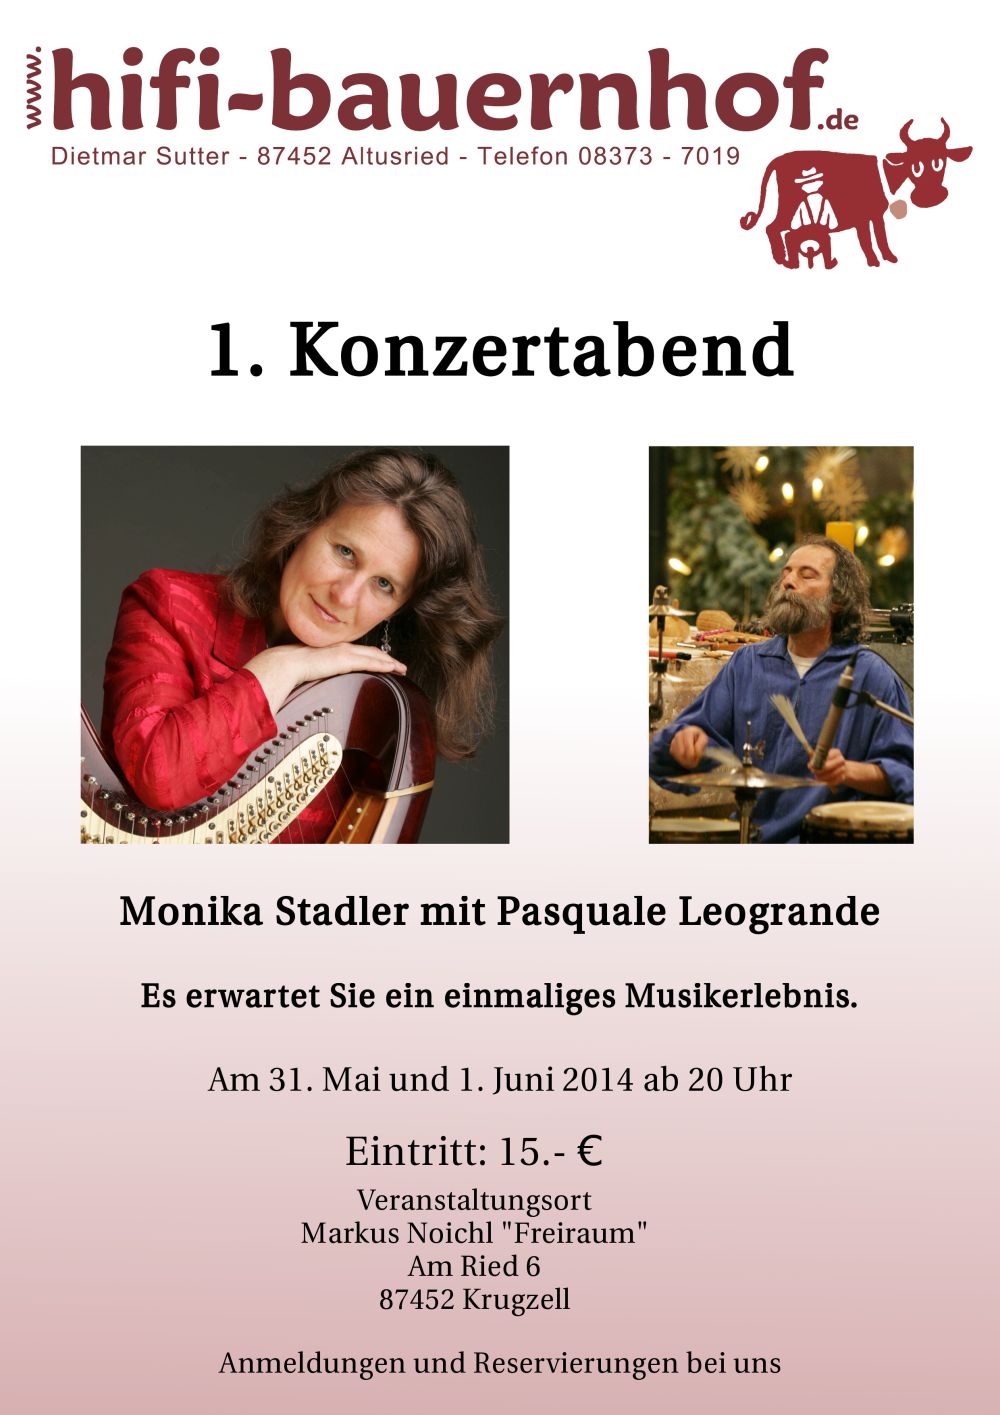 Der Hifi Bauernhof veranstaltet den 1. Konzertabend Monika Stadler mit Pasquale Leogrande